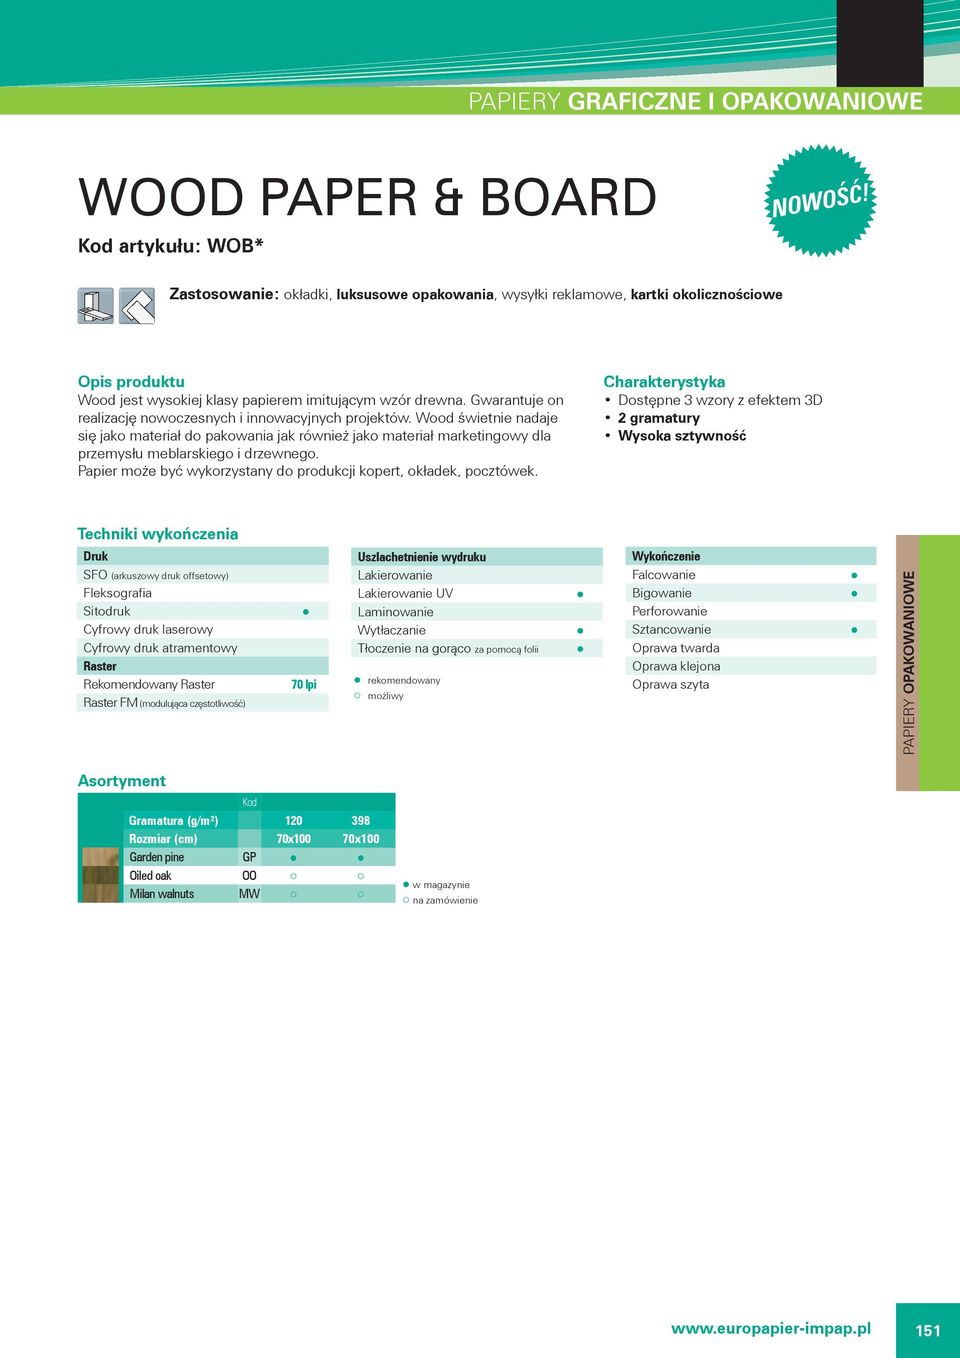 Wood świetnie nadaje się jako materiał do pakowania jak również jako materiał marketingowy dla przemysłu meblarskiego i drzewnego.